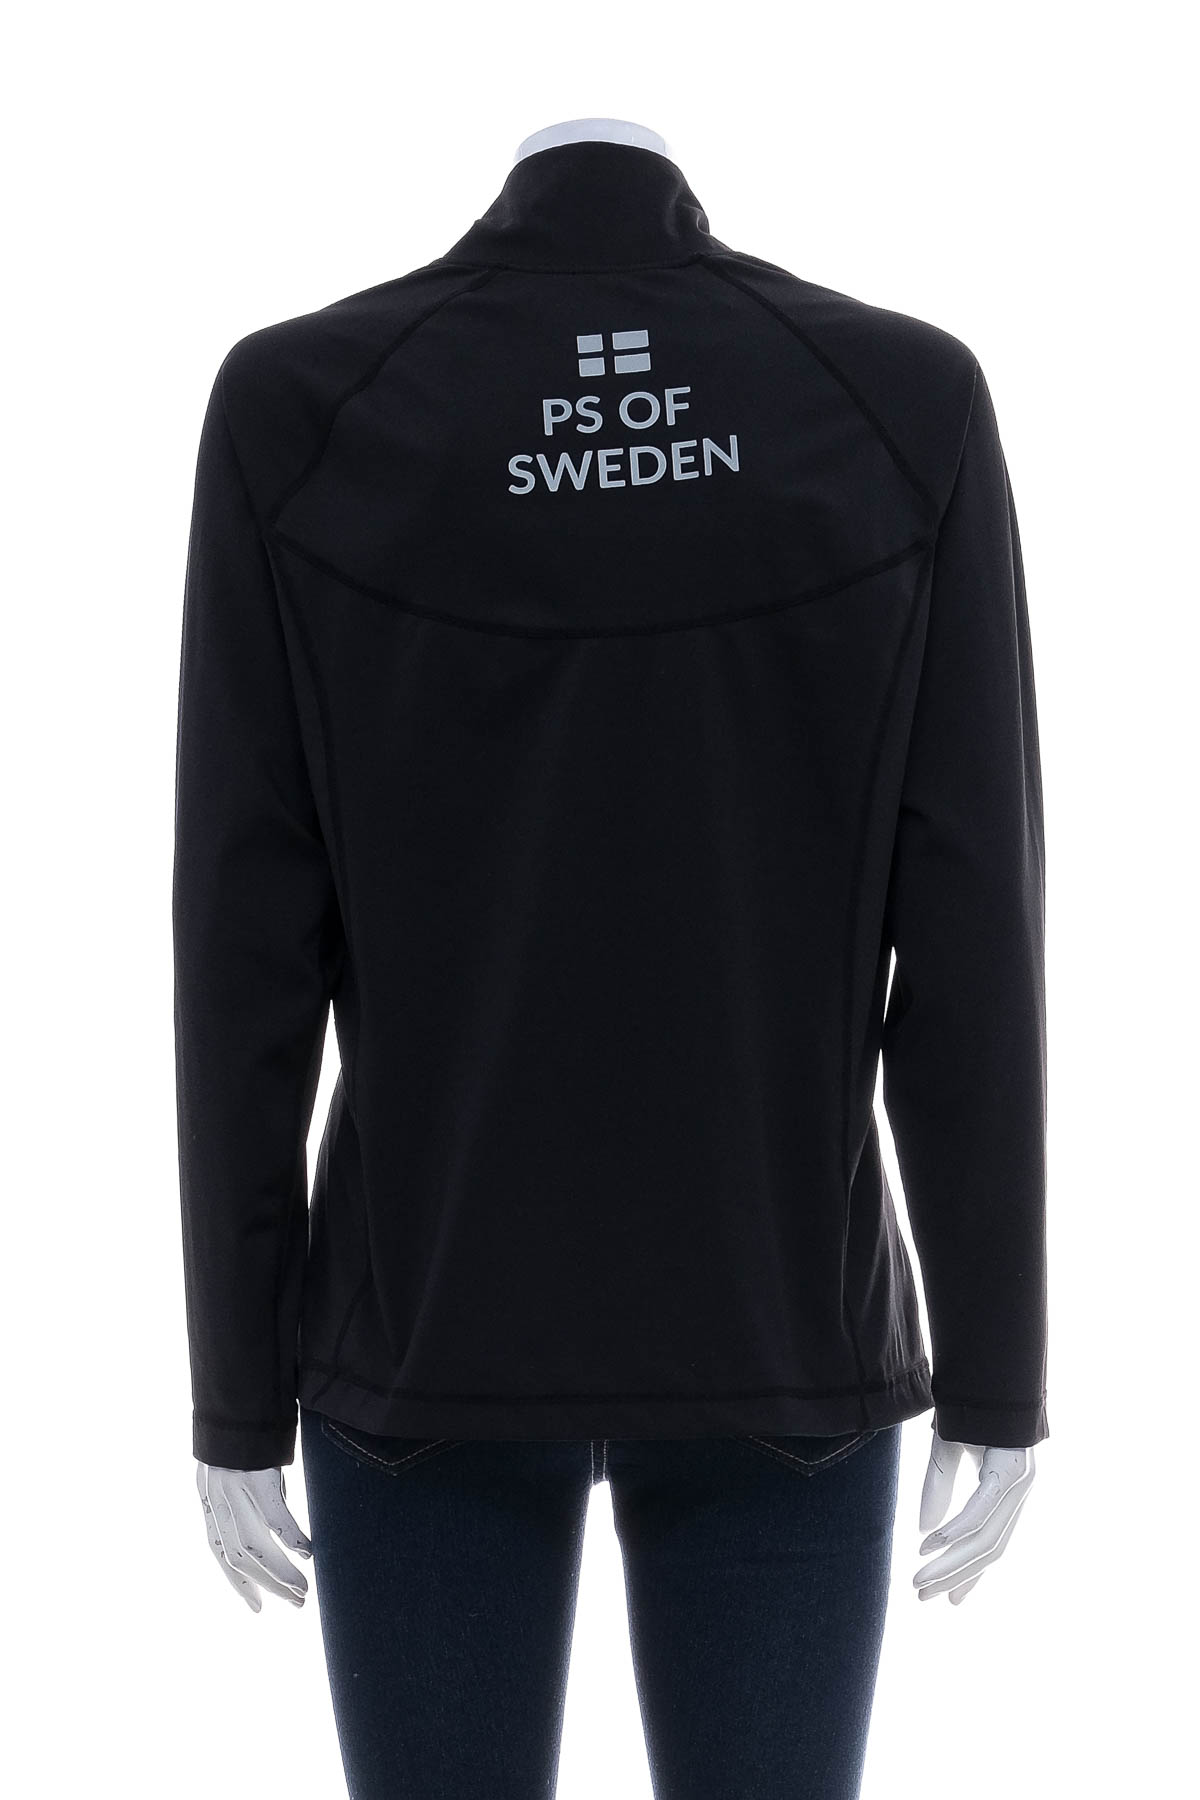 Дамска спортна блуза - PS of Sweden - 1